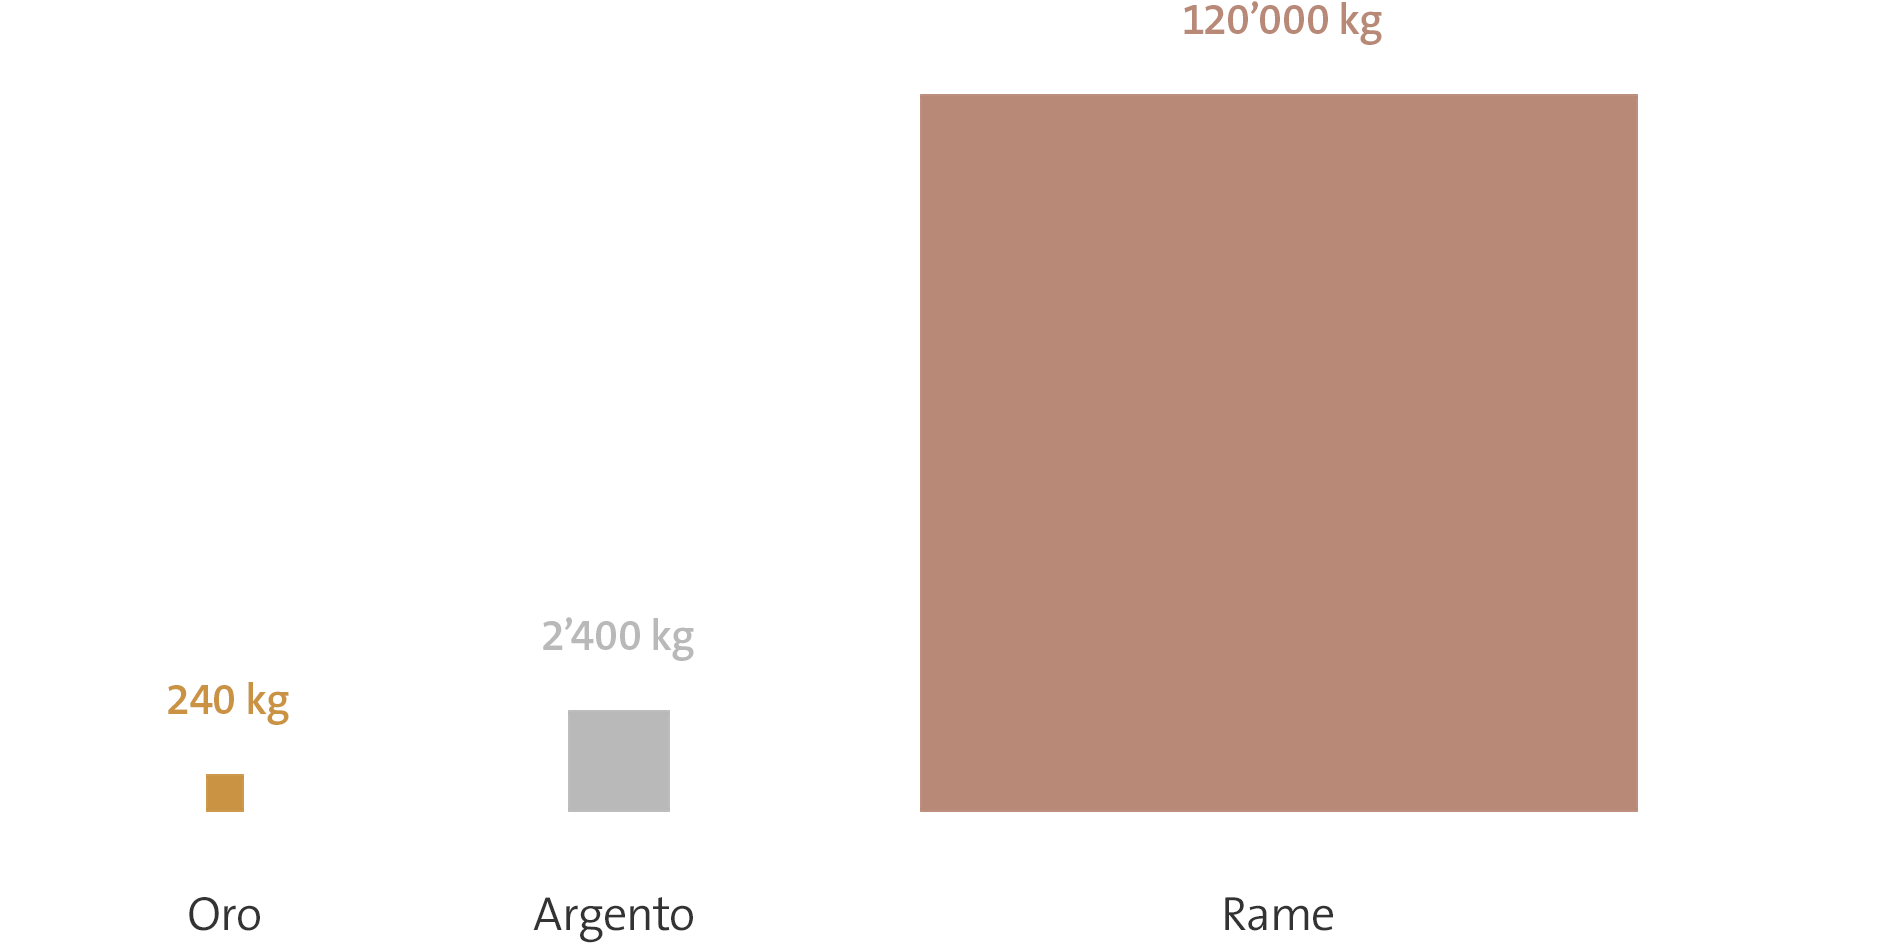 Grafico sulle preziose materie prime negli otto milioni di telefoni cellulari inutilizzati in Svizzera. 240 kg d'oro, 2'400 kg d'argento e 120'000 kg di rame